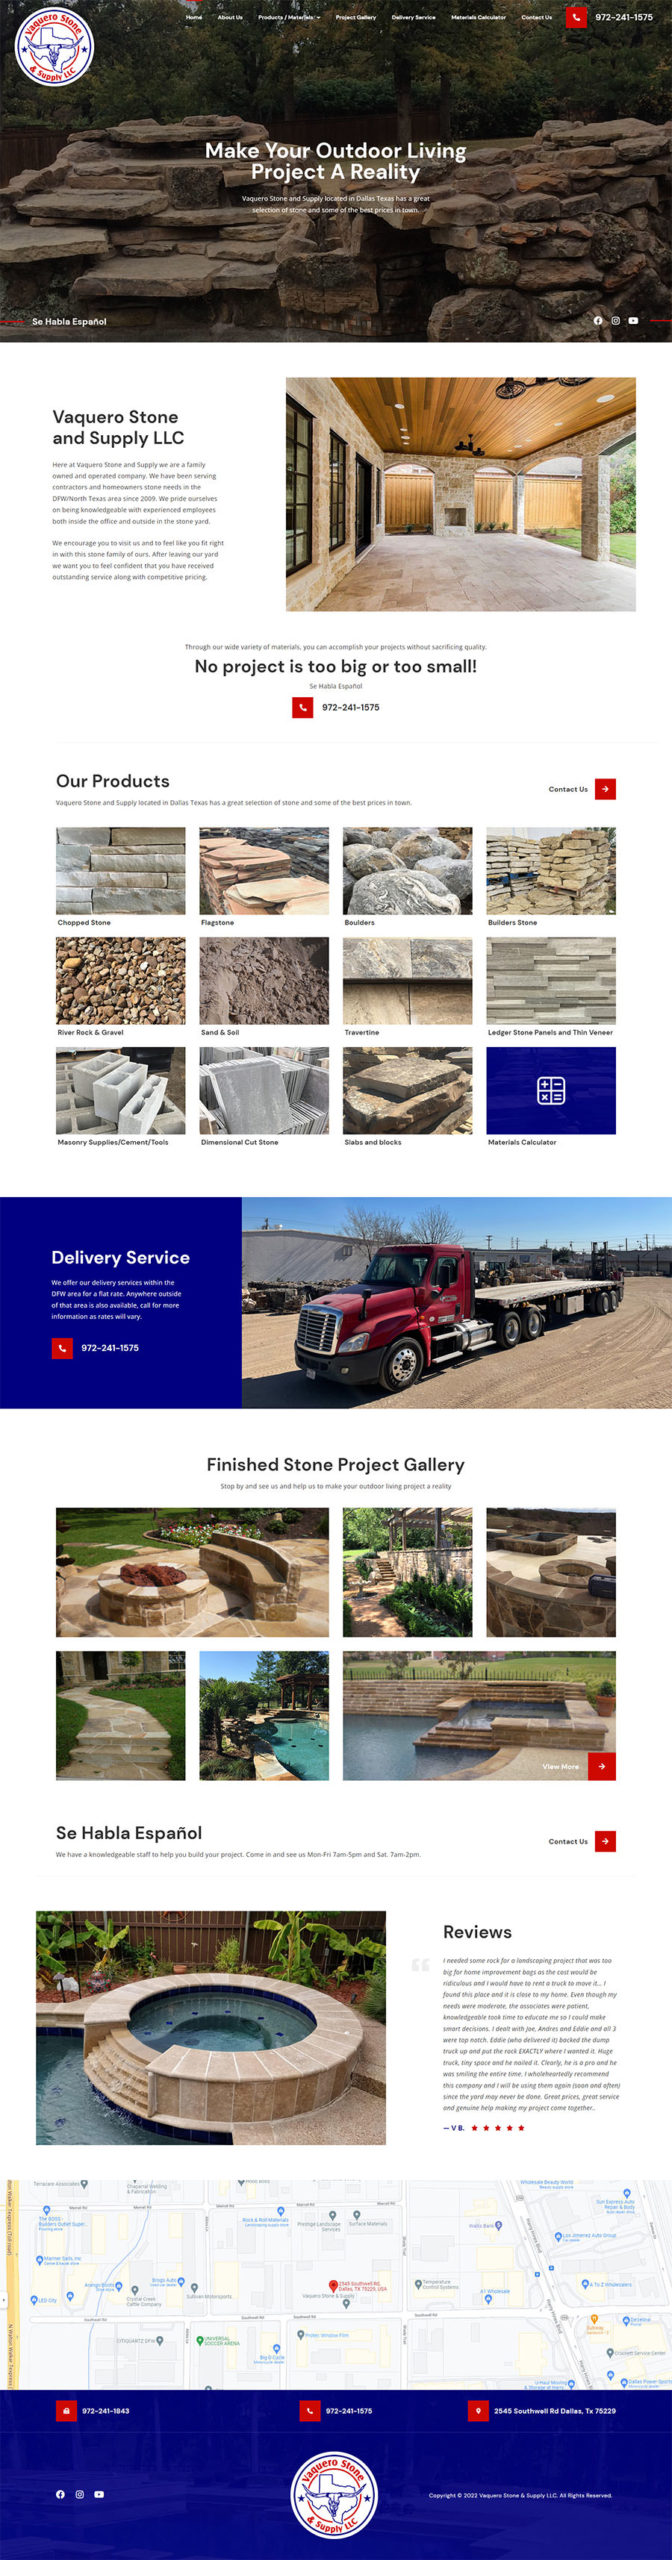 web design dallas texas for Vaquero Stone and Supply 